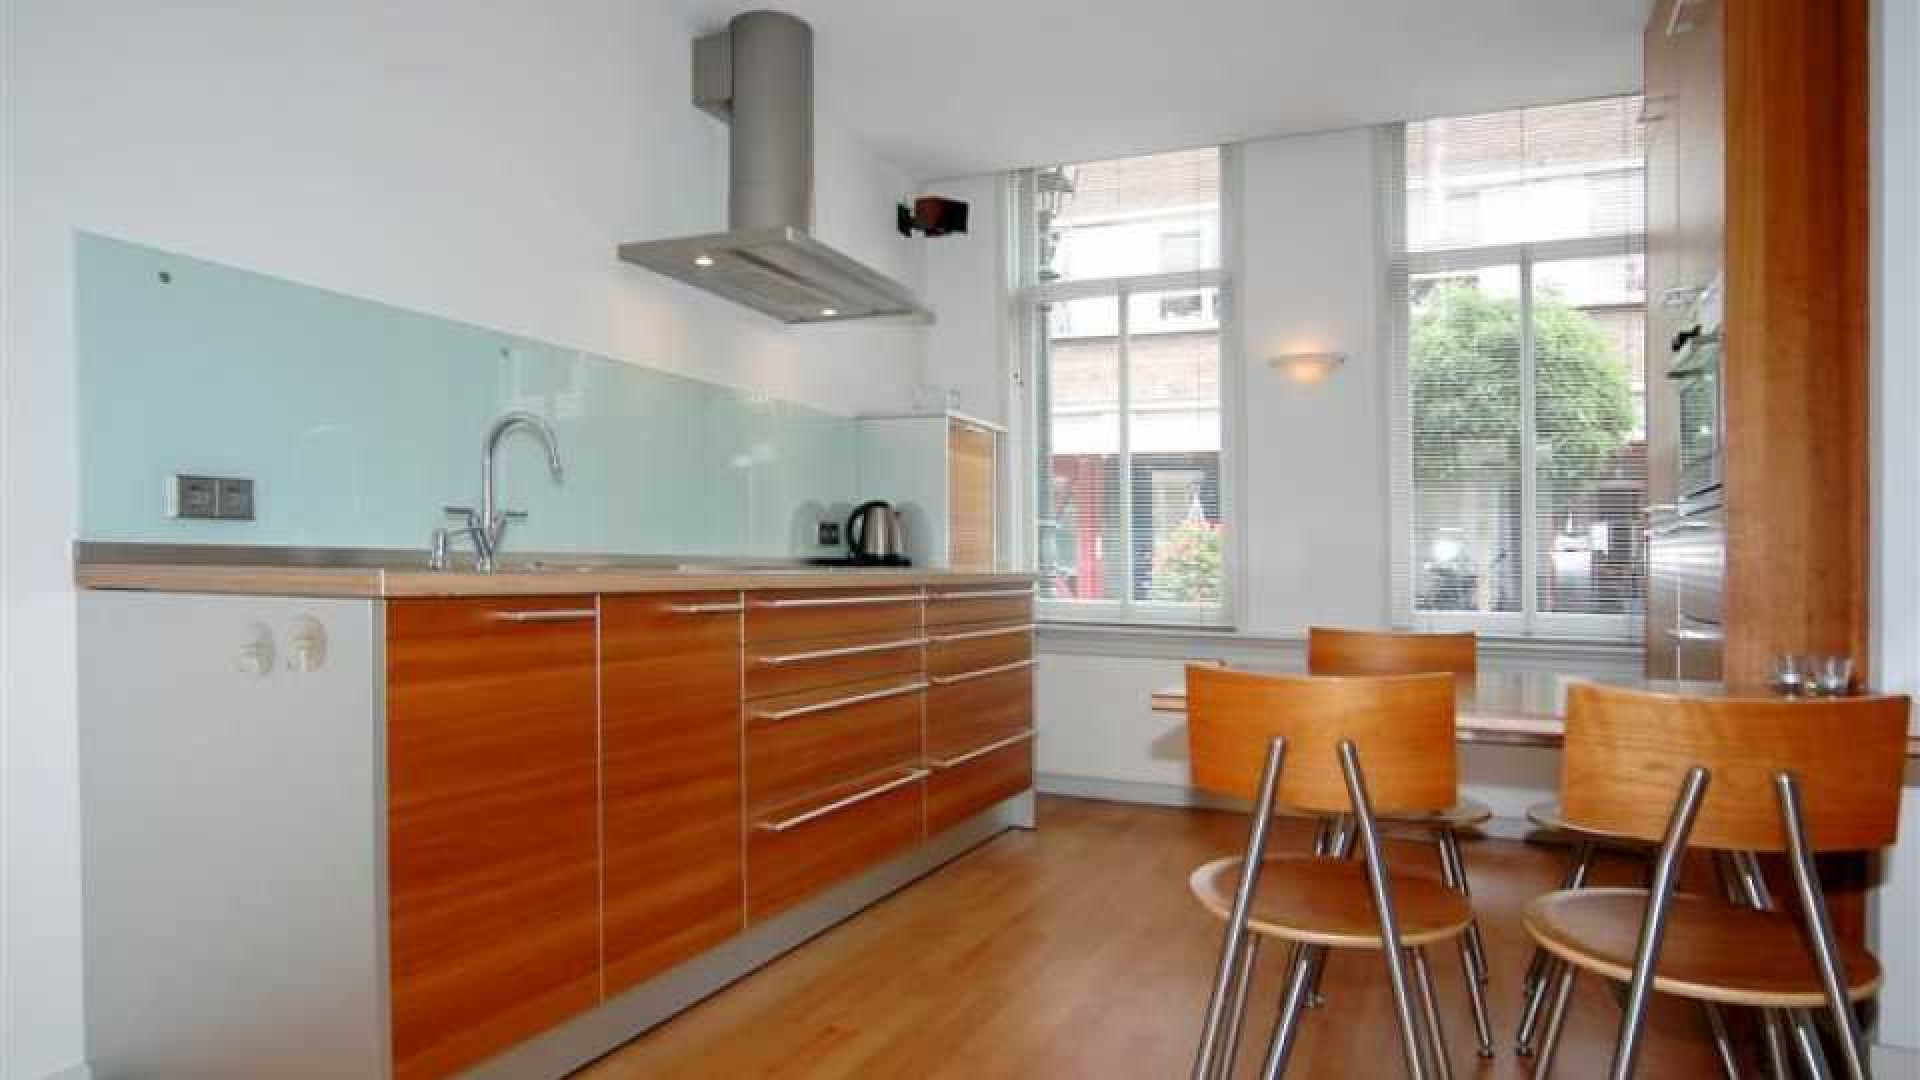 Frits Wester huurt appartement in Voorburg in de buurt van zijn ex!, Zie foto's 2